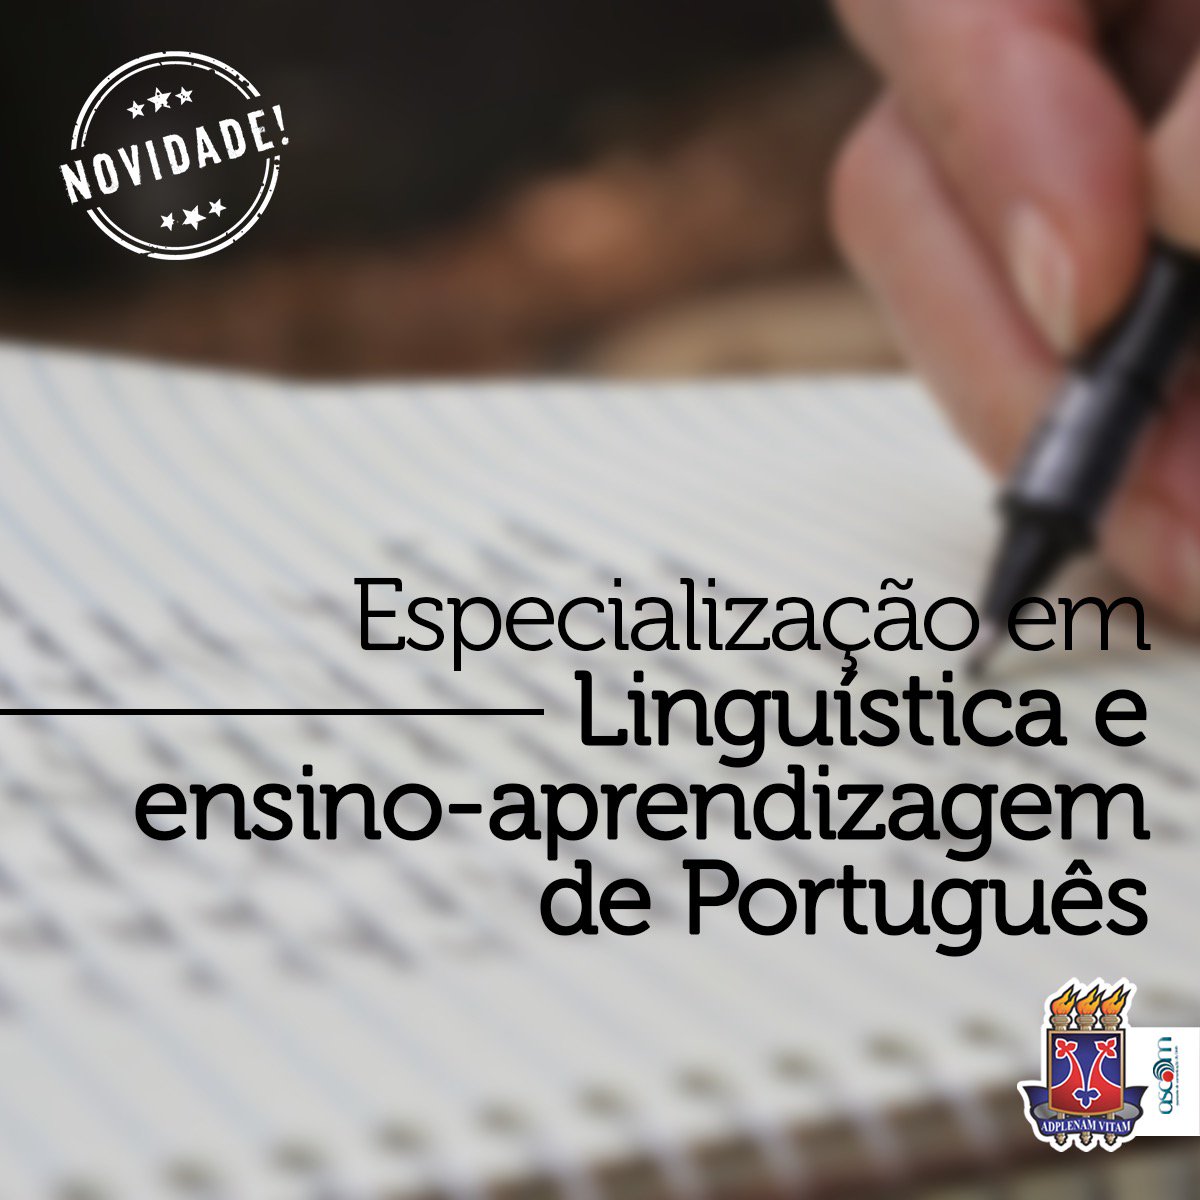 Uesb inscreve para Especialização em Linguística e ensino-aprendizagem de Português